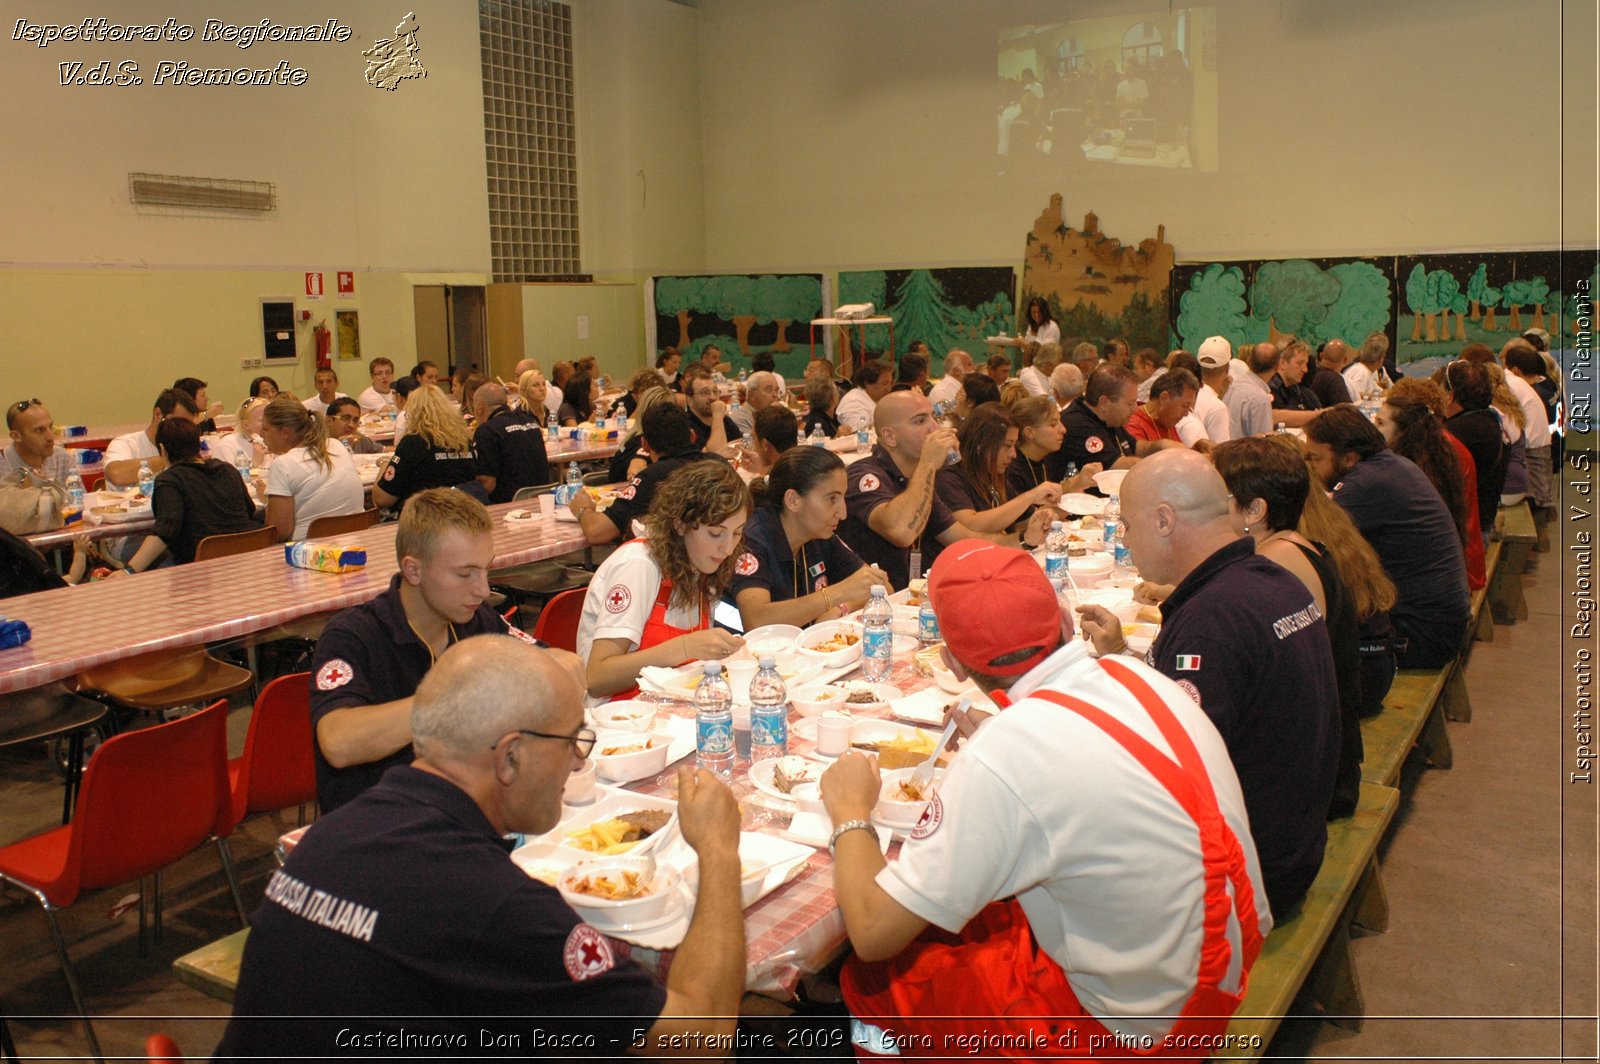 Castelnuovo Don Bosco - 5 settembre 2009 - Gara regionale di primo soccorso -  Croce Rossa Italiana - Ispettorato Regionale Volontari del Soccorso Piemonte